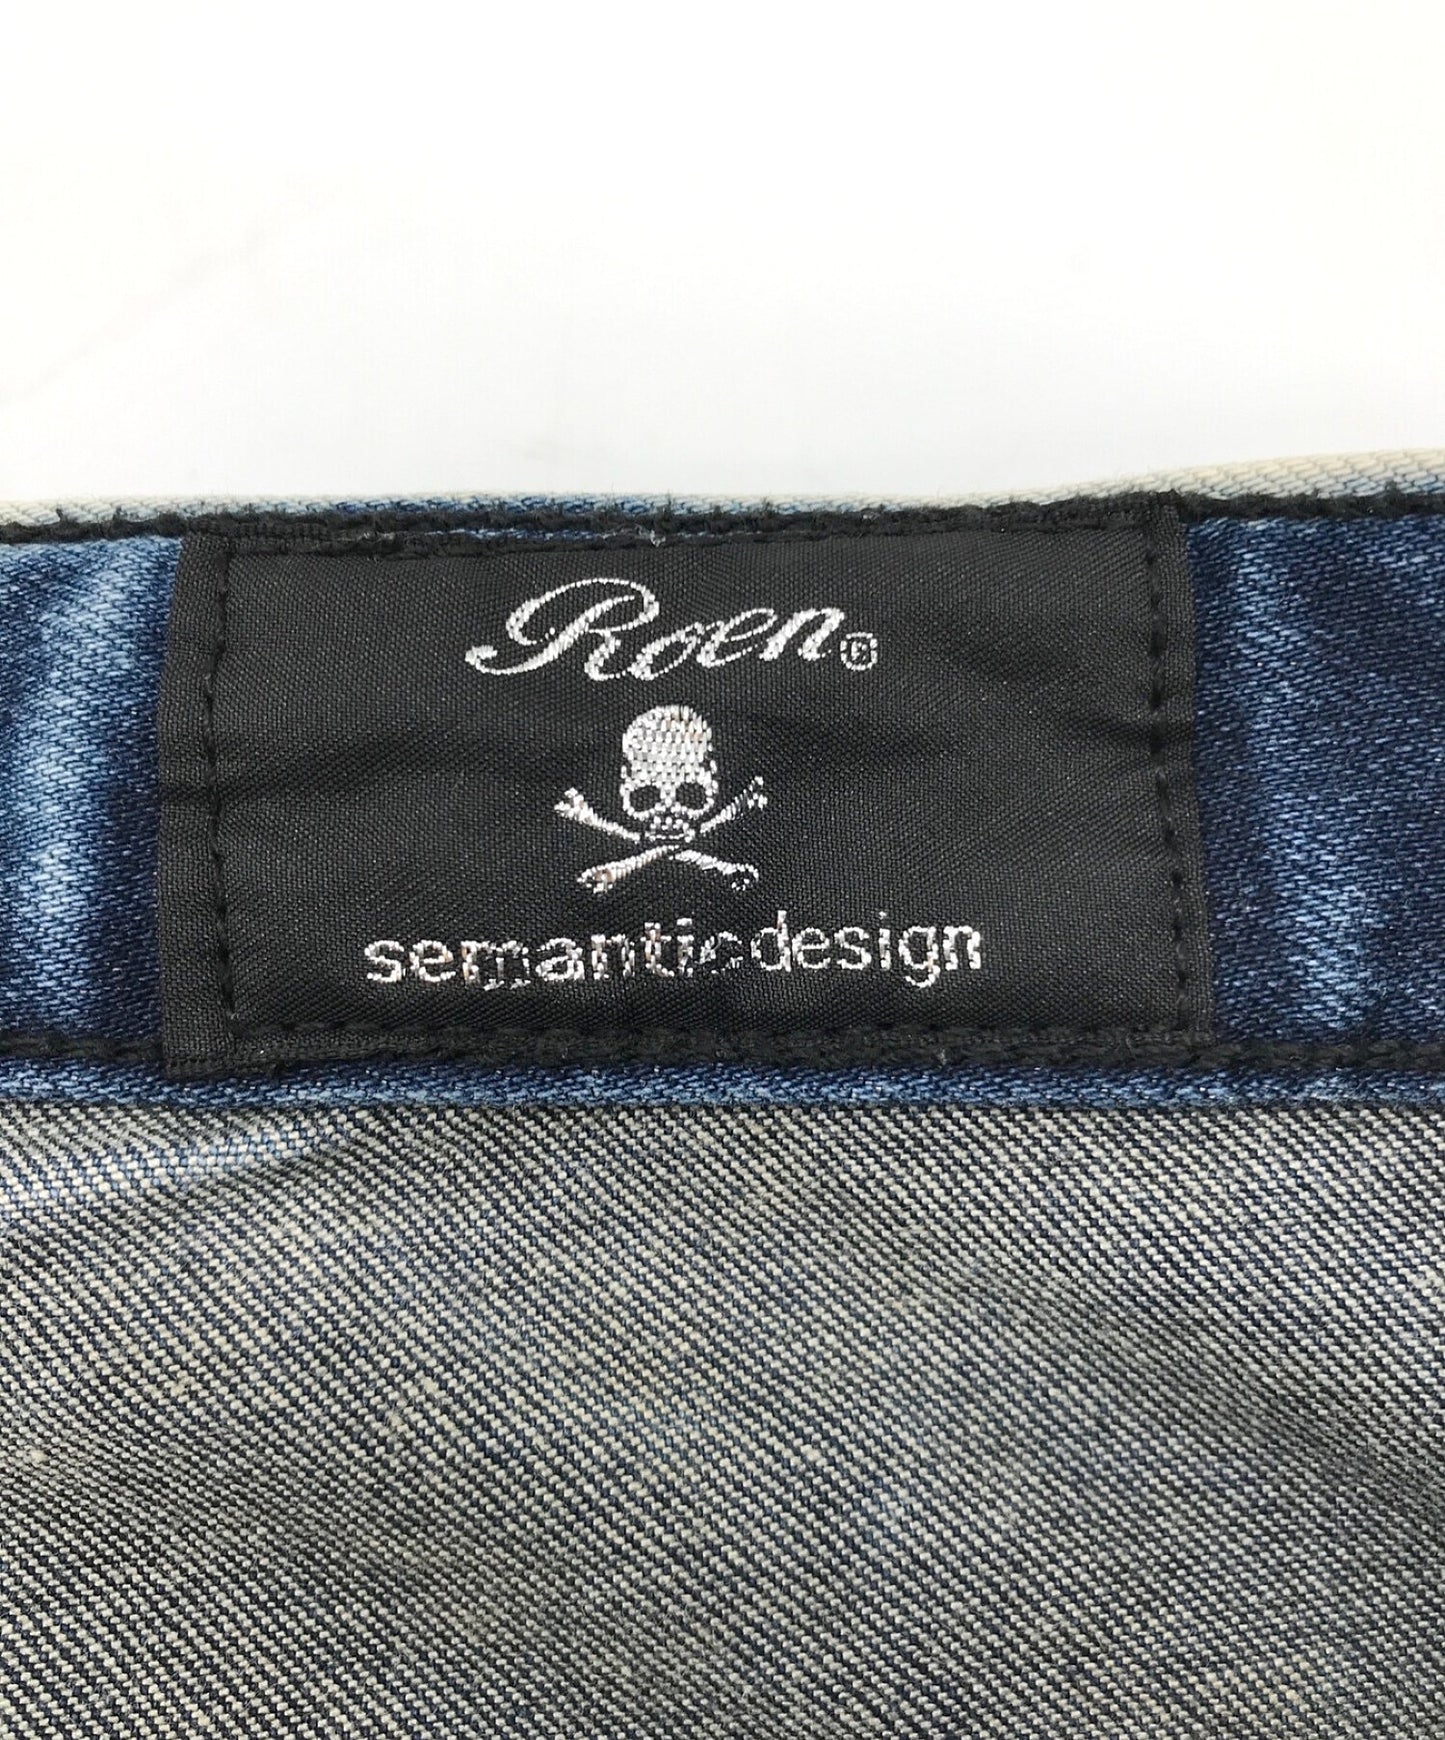 Roen×语义设计合作损坏的牛仔裤9R053